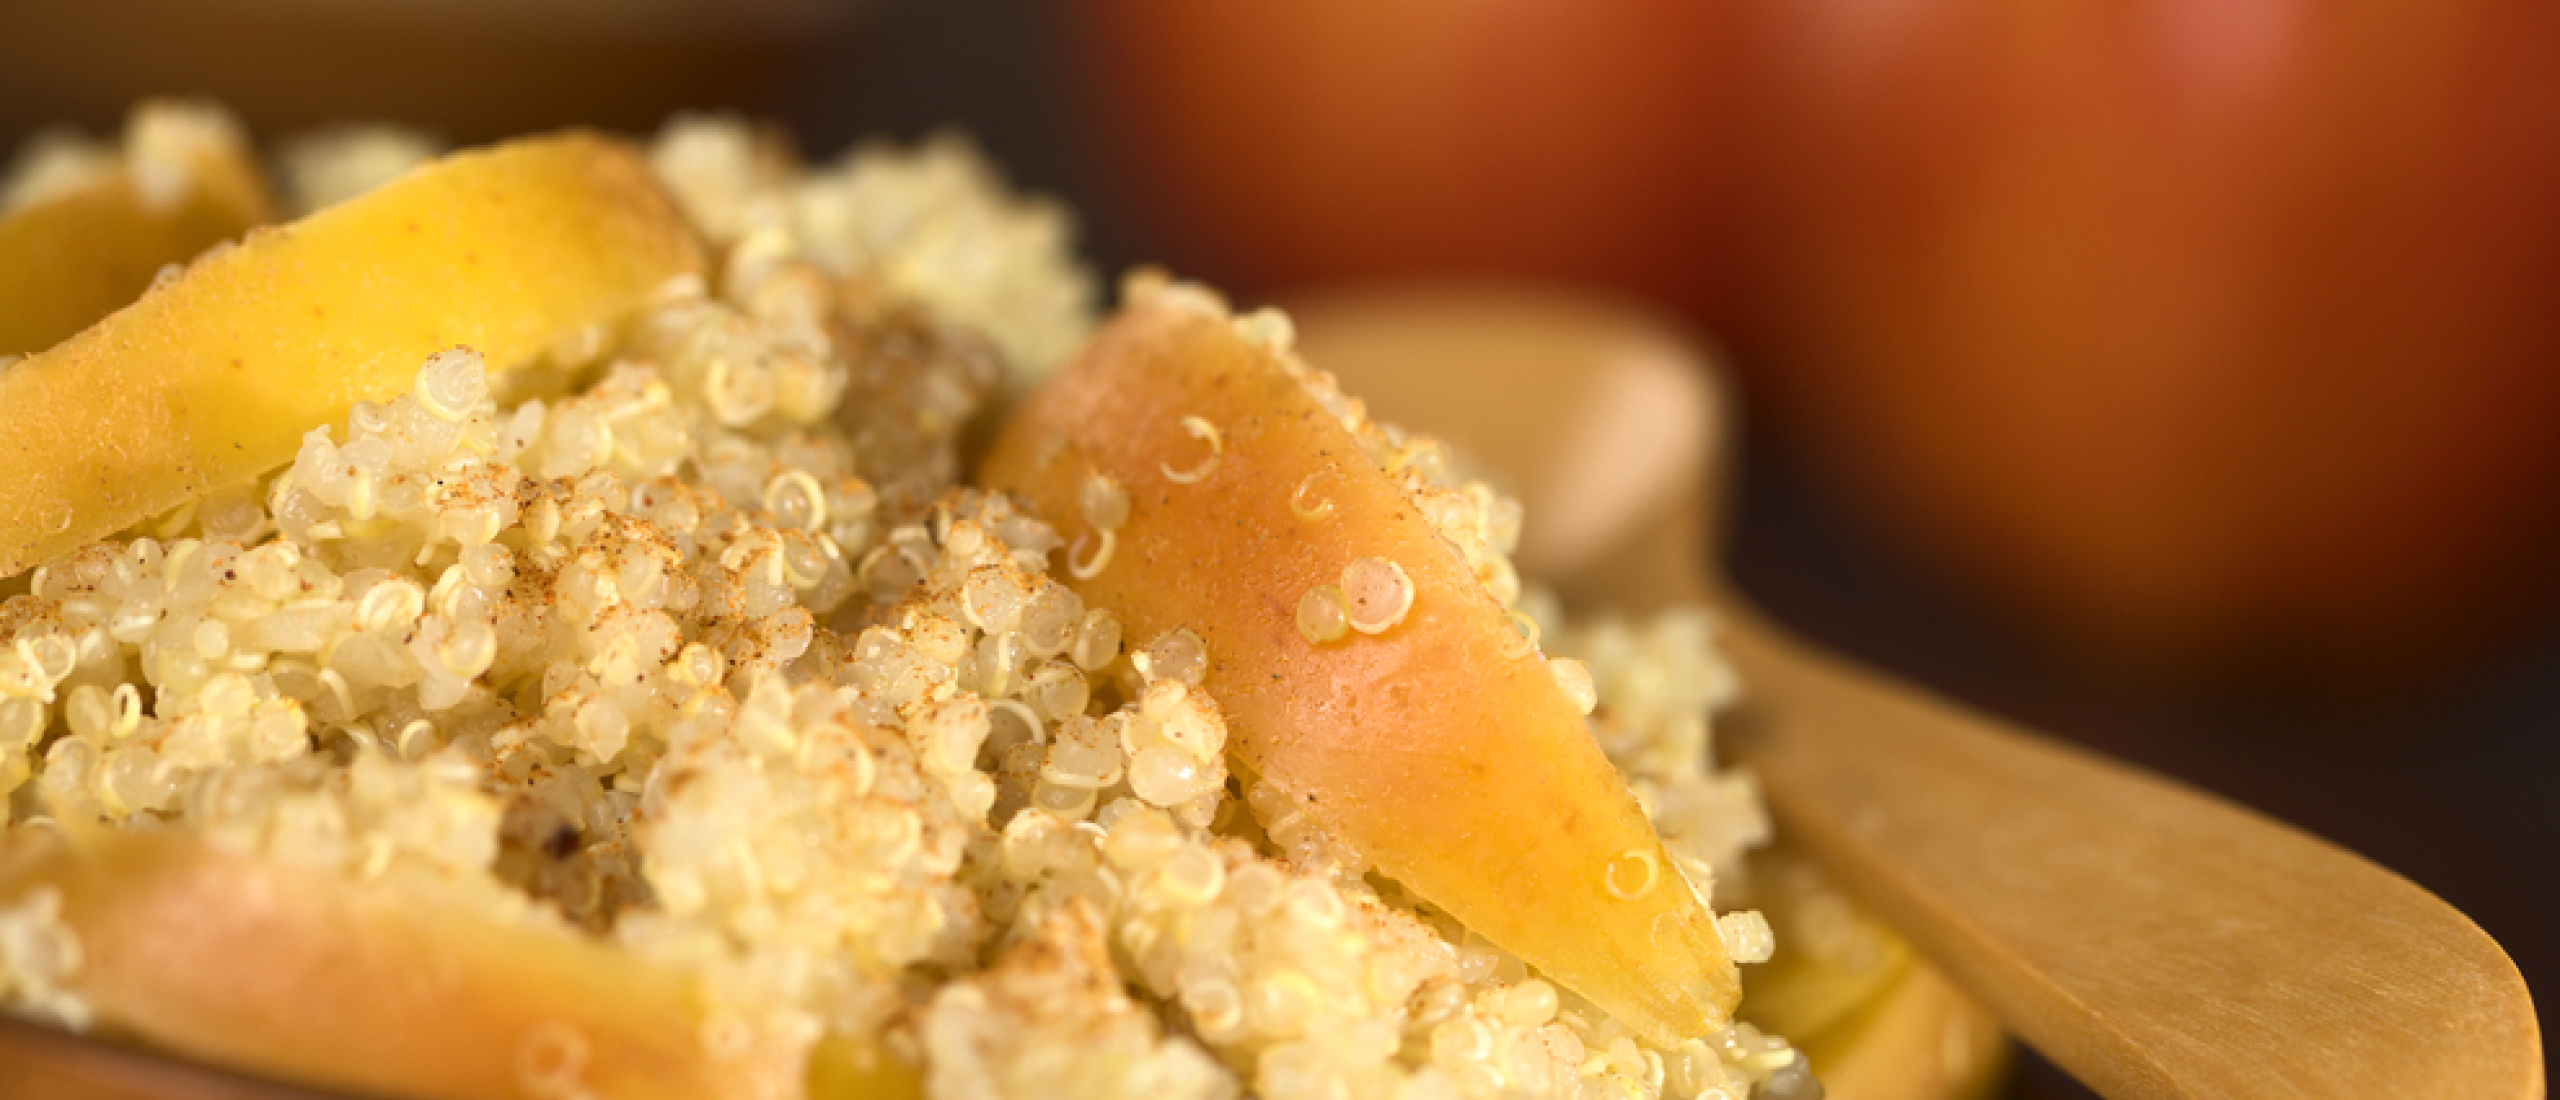 Recept appel kaneel quinoa taartje